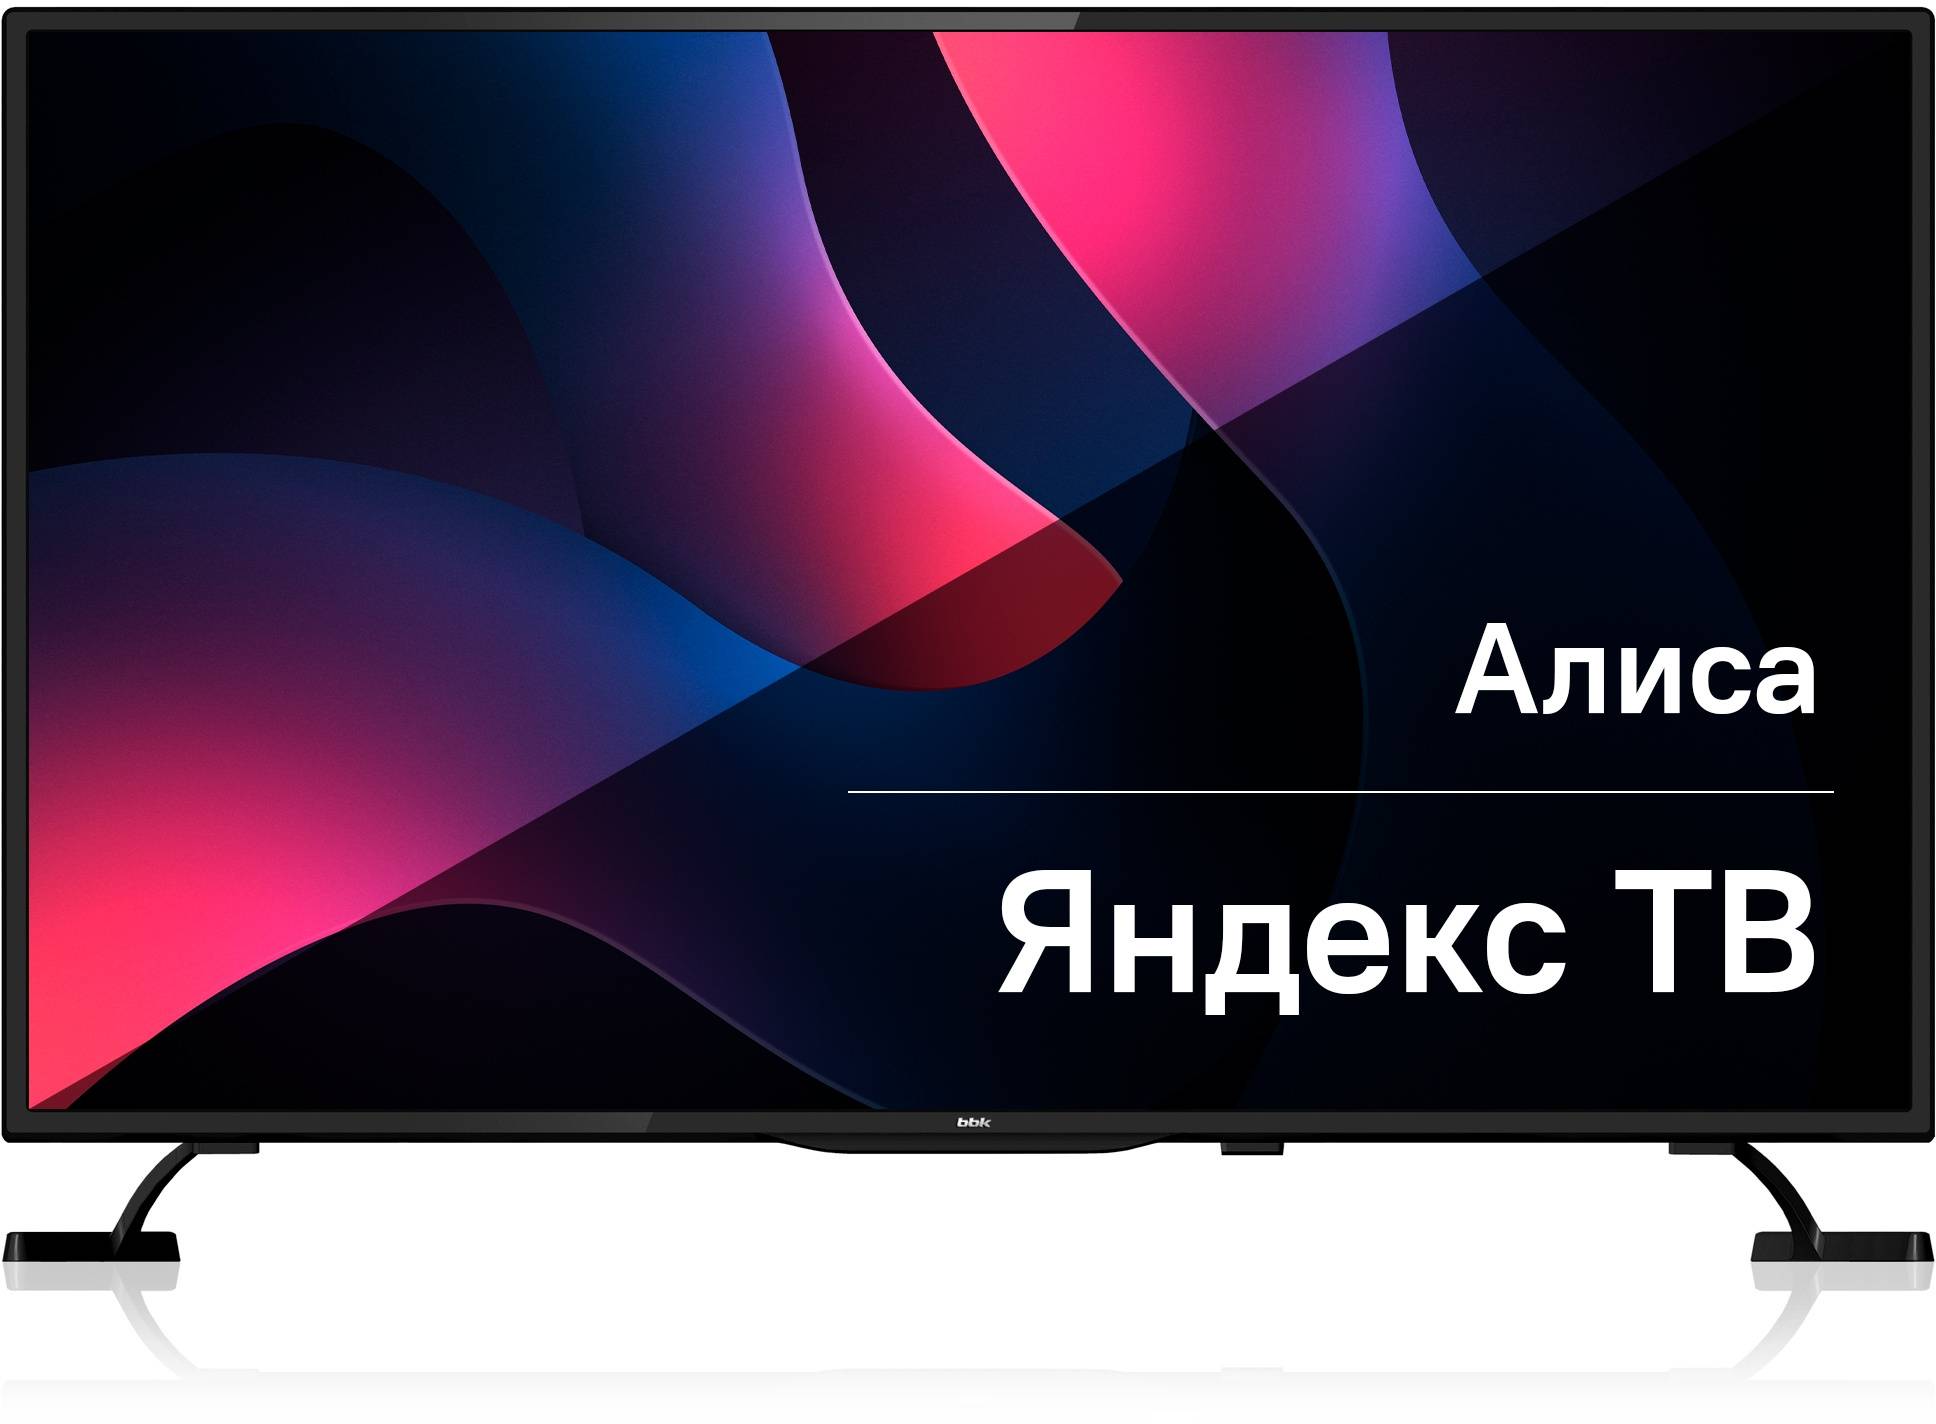 Телевизор BBK Яндекс.ТВ 55LEX-8280/UTS2C, 55", LED, 4K Ultra HD, Яндекс.ТВ, черный